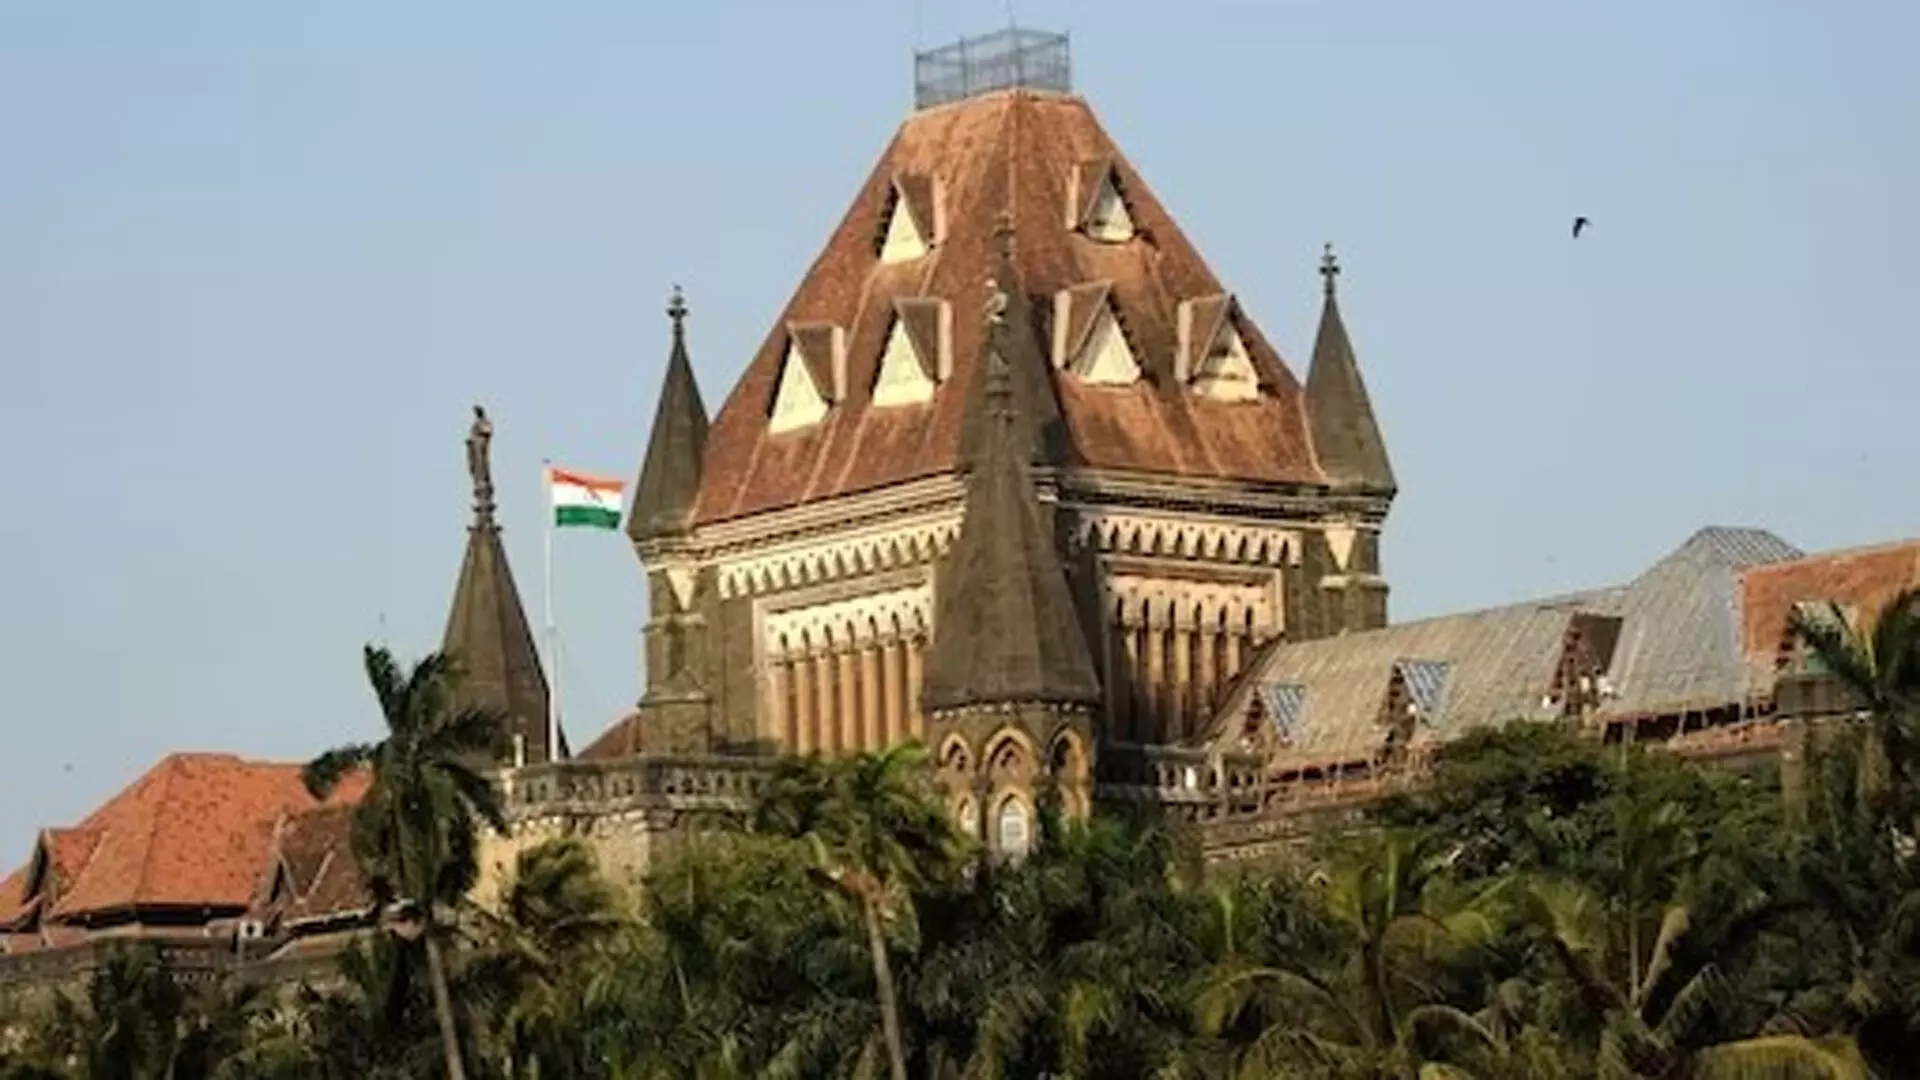 Bombay हाईकोर्ट में जनहित याचिका दायर कर सरकार से कार्रवाई करने की मांग की गई